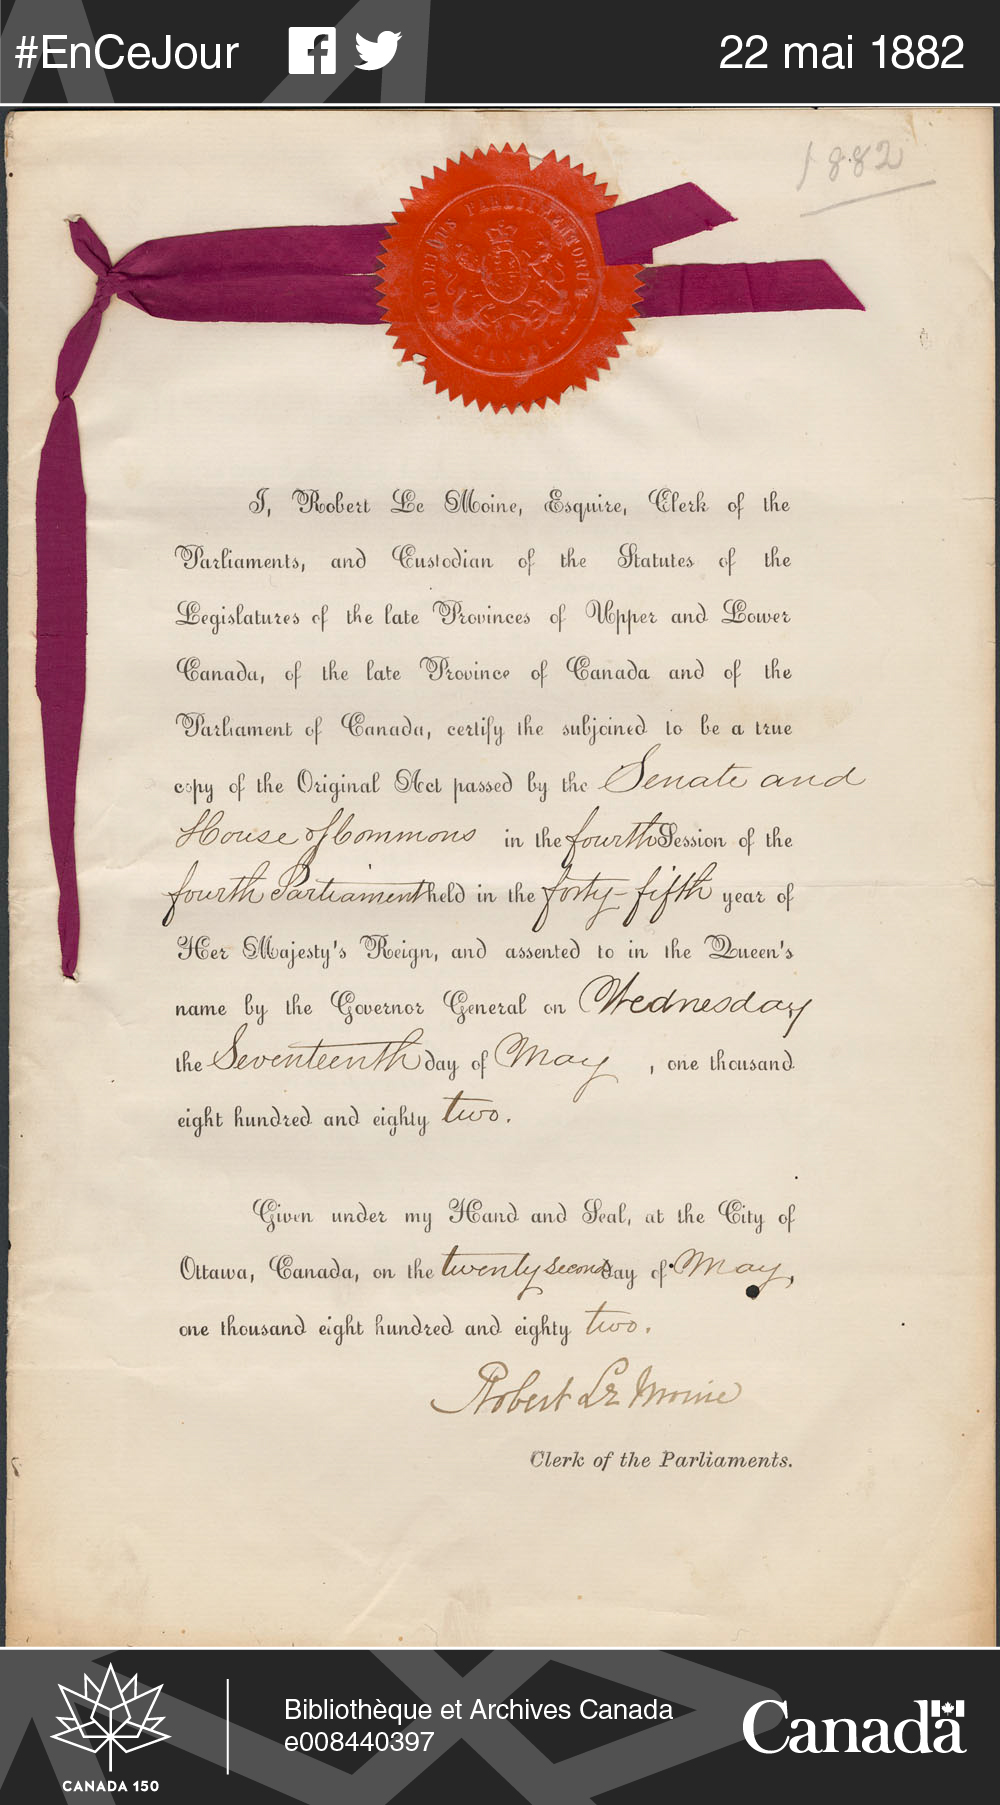 Certificat authentifiant un exemplaire de l’Acte concernant le Service Civil du Canada de 1882. Fonds de la Commission de la fonction publique du Canada.